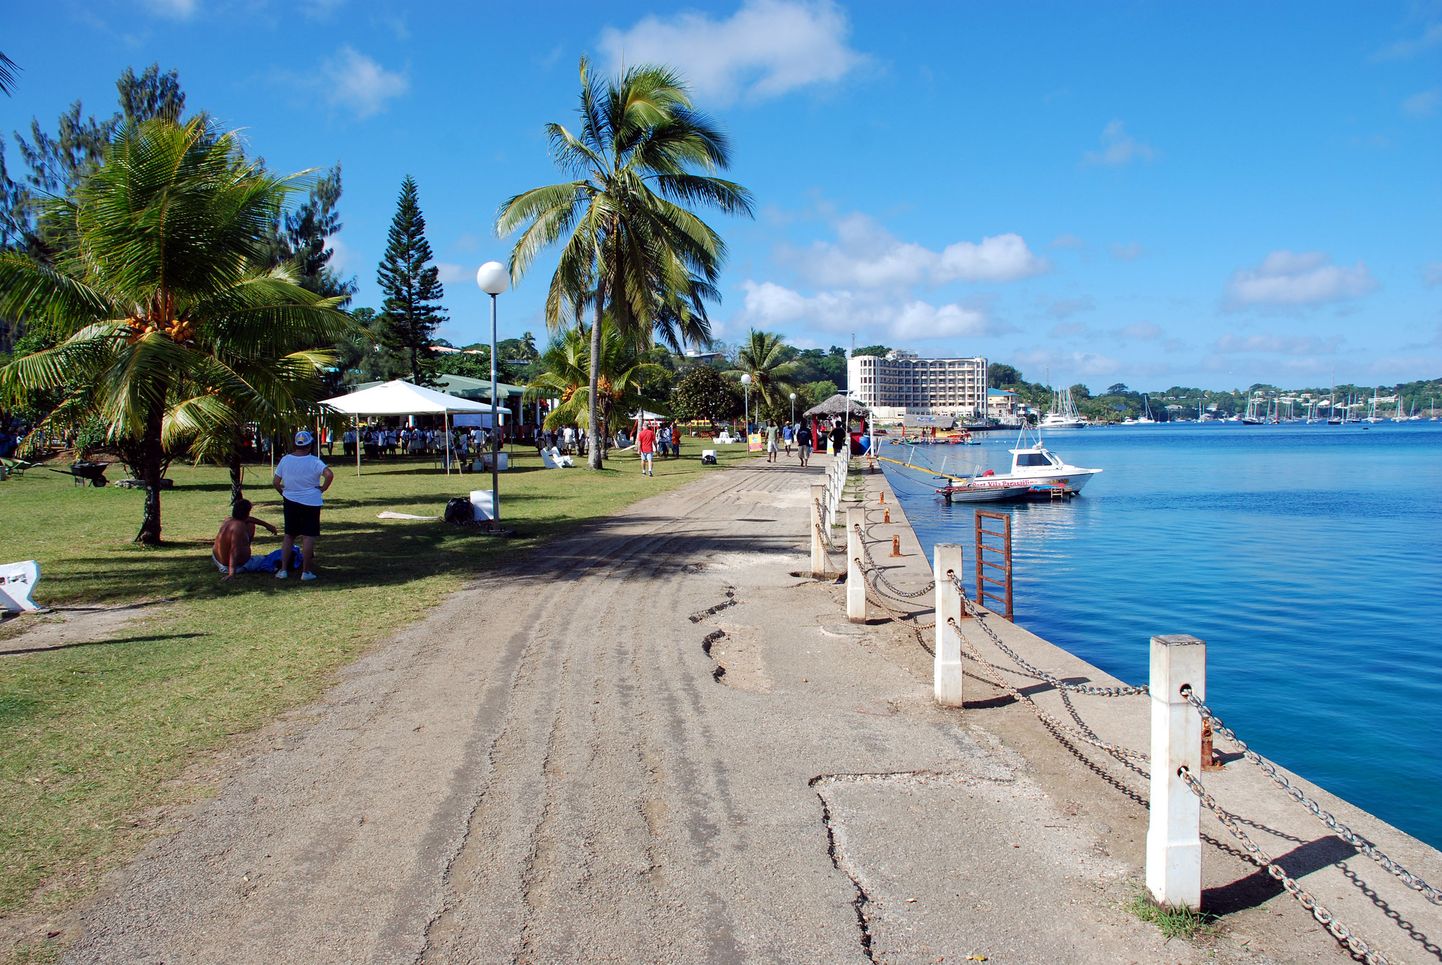 Vanuatu kodanike muretut elu palmide all häirisid tugevalt küberkurjategijad, kellel õnnestus rohkem kui kuuks ajaks maha võtta riigi e-teenused. Kohalik haigla ja paljud ametnikud pöördusid tagasi vana hea paberi ja pliiatsi juurde. Pole teada, kas pahalased ka lunarahanõude esitasid.